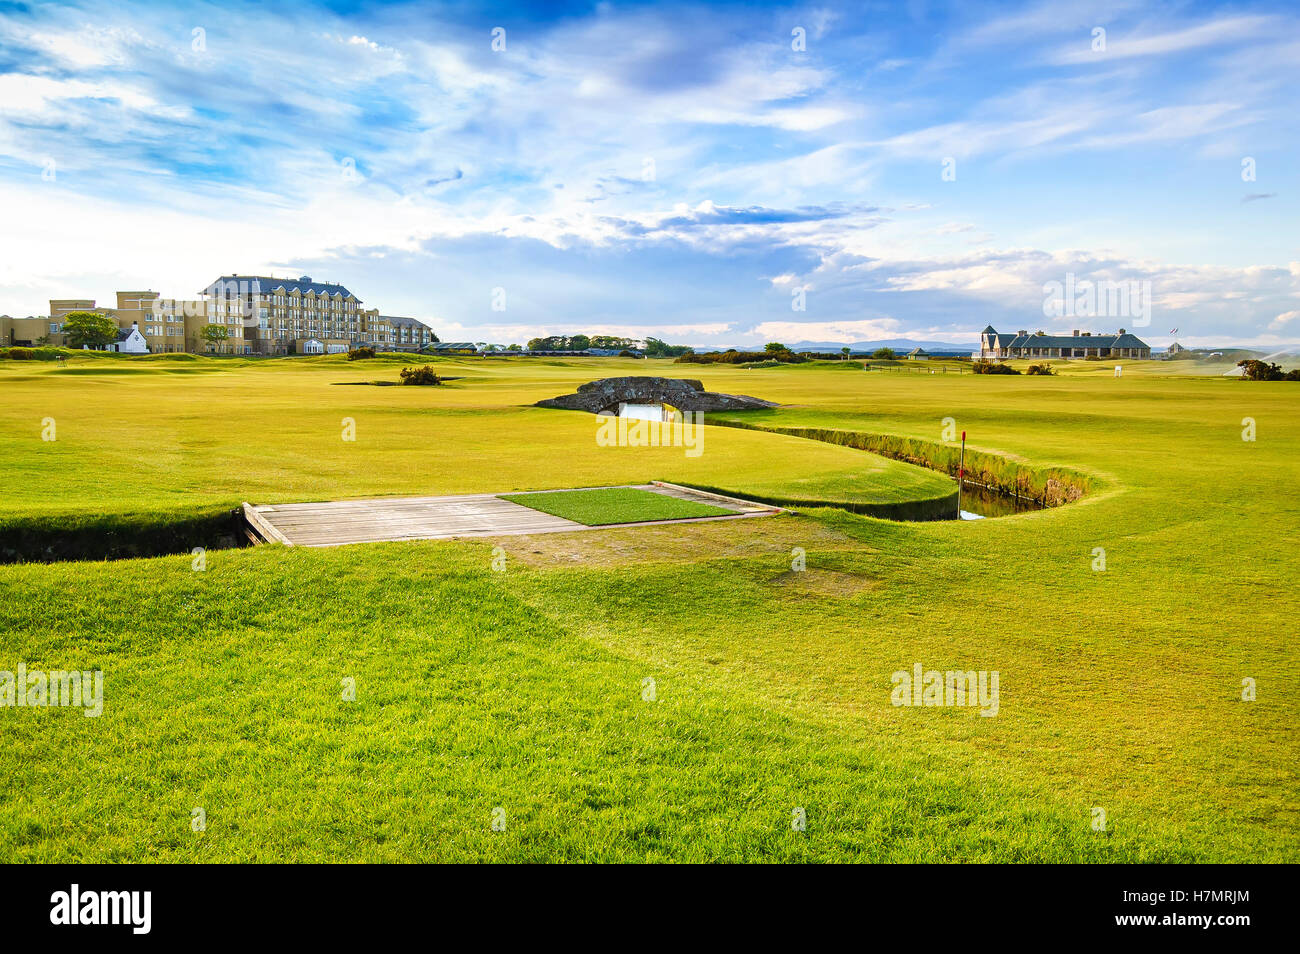 Golf St Andrews old course links, fairway e ponte di pietra sul foro 18. Fife, Scozia, Regno Unito, Europa. Foto Stock